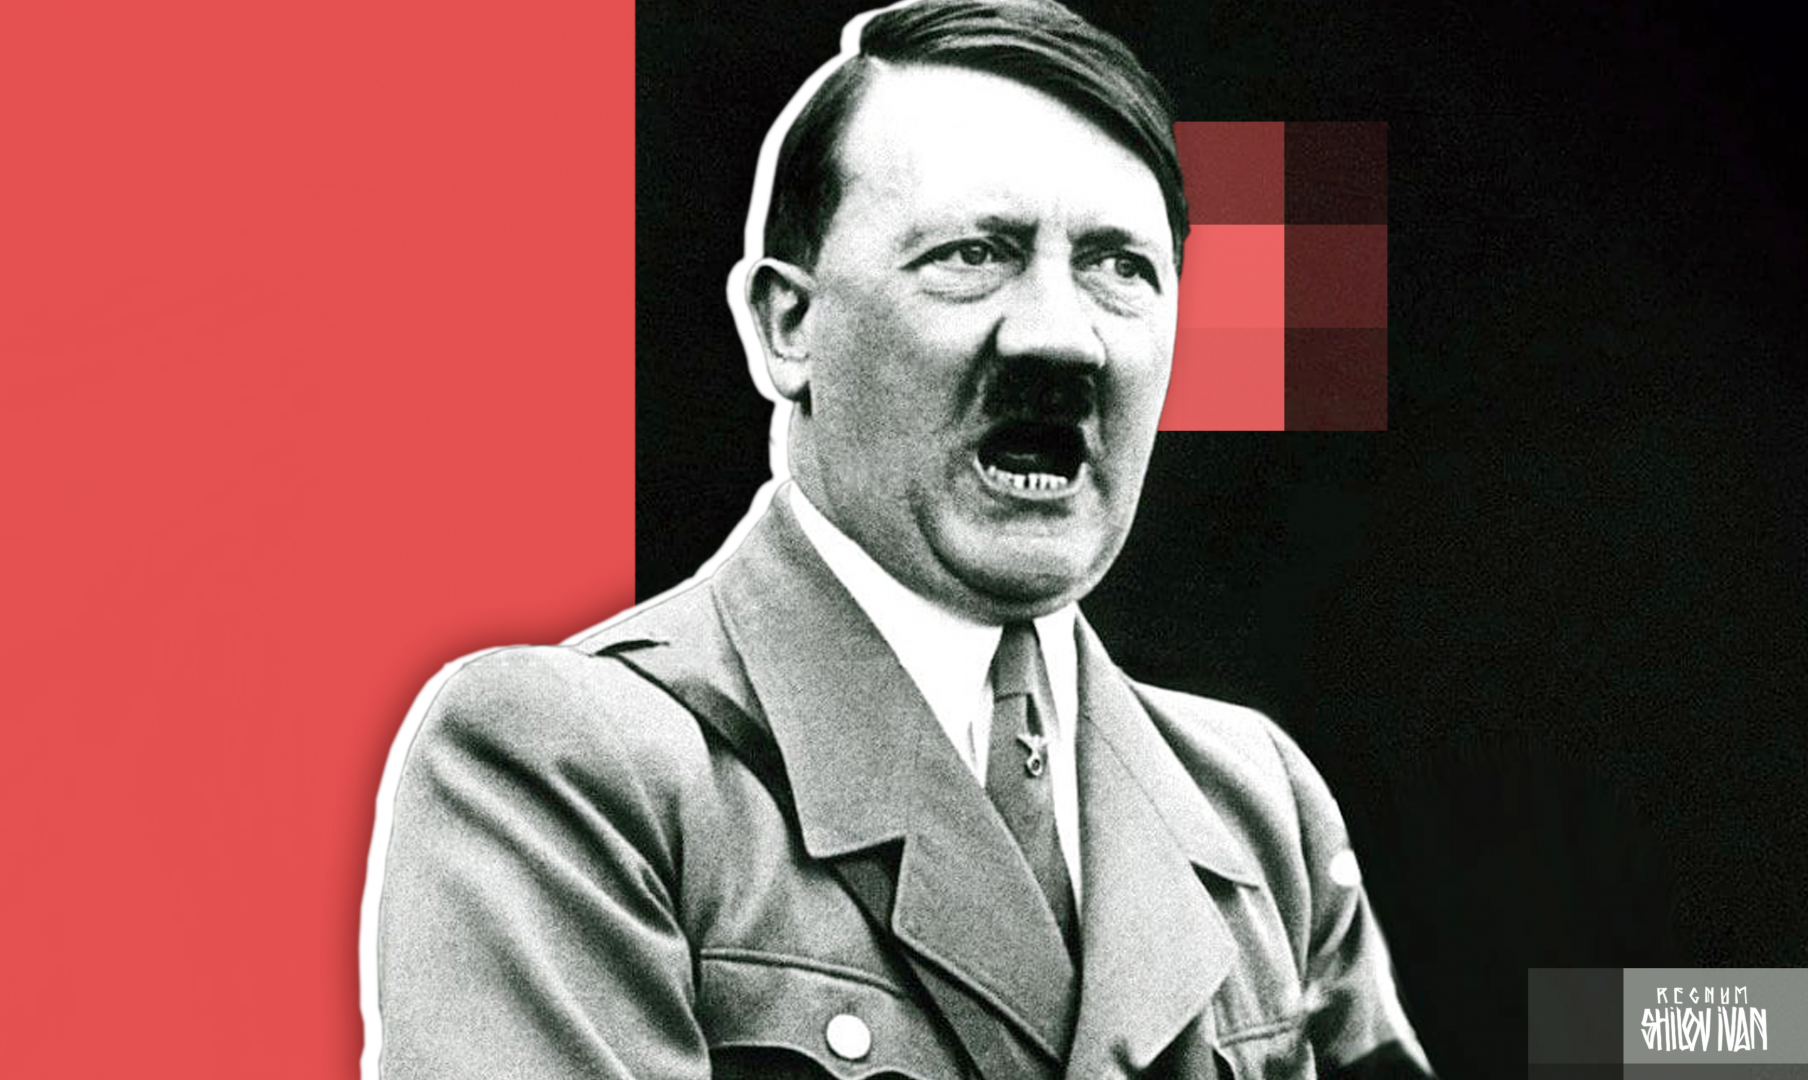 Реферат: Адольф Гитлер 4